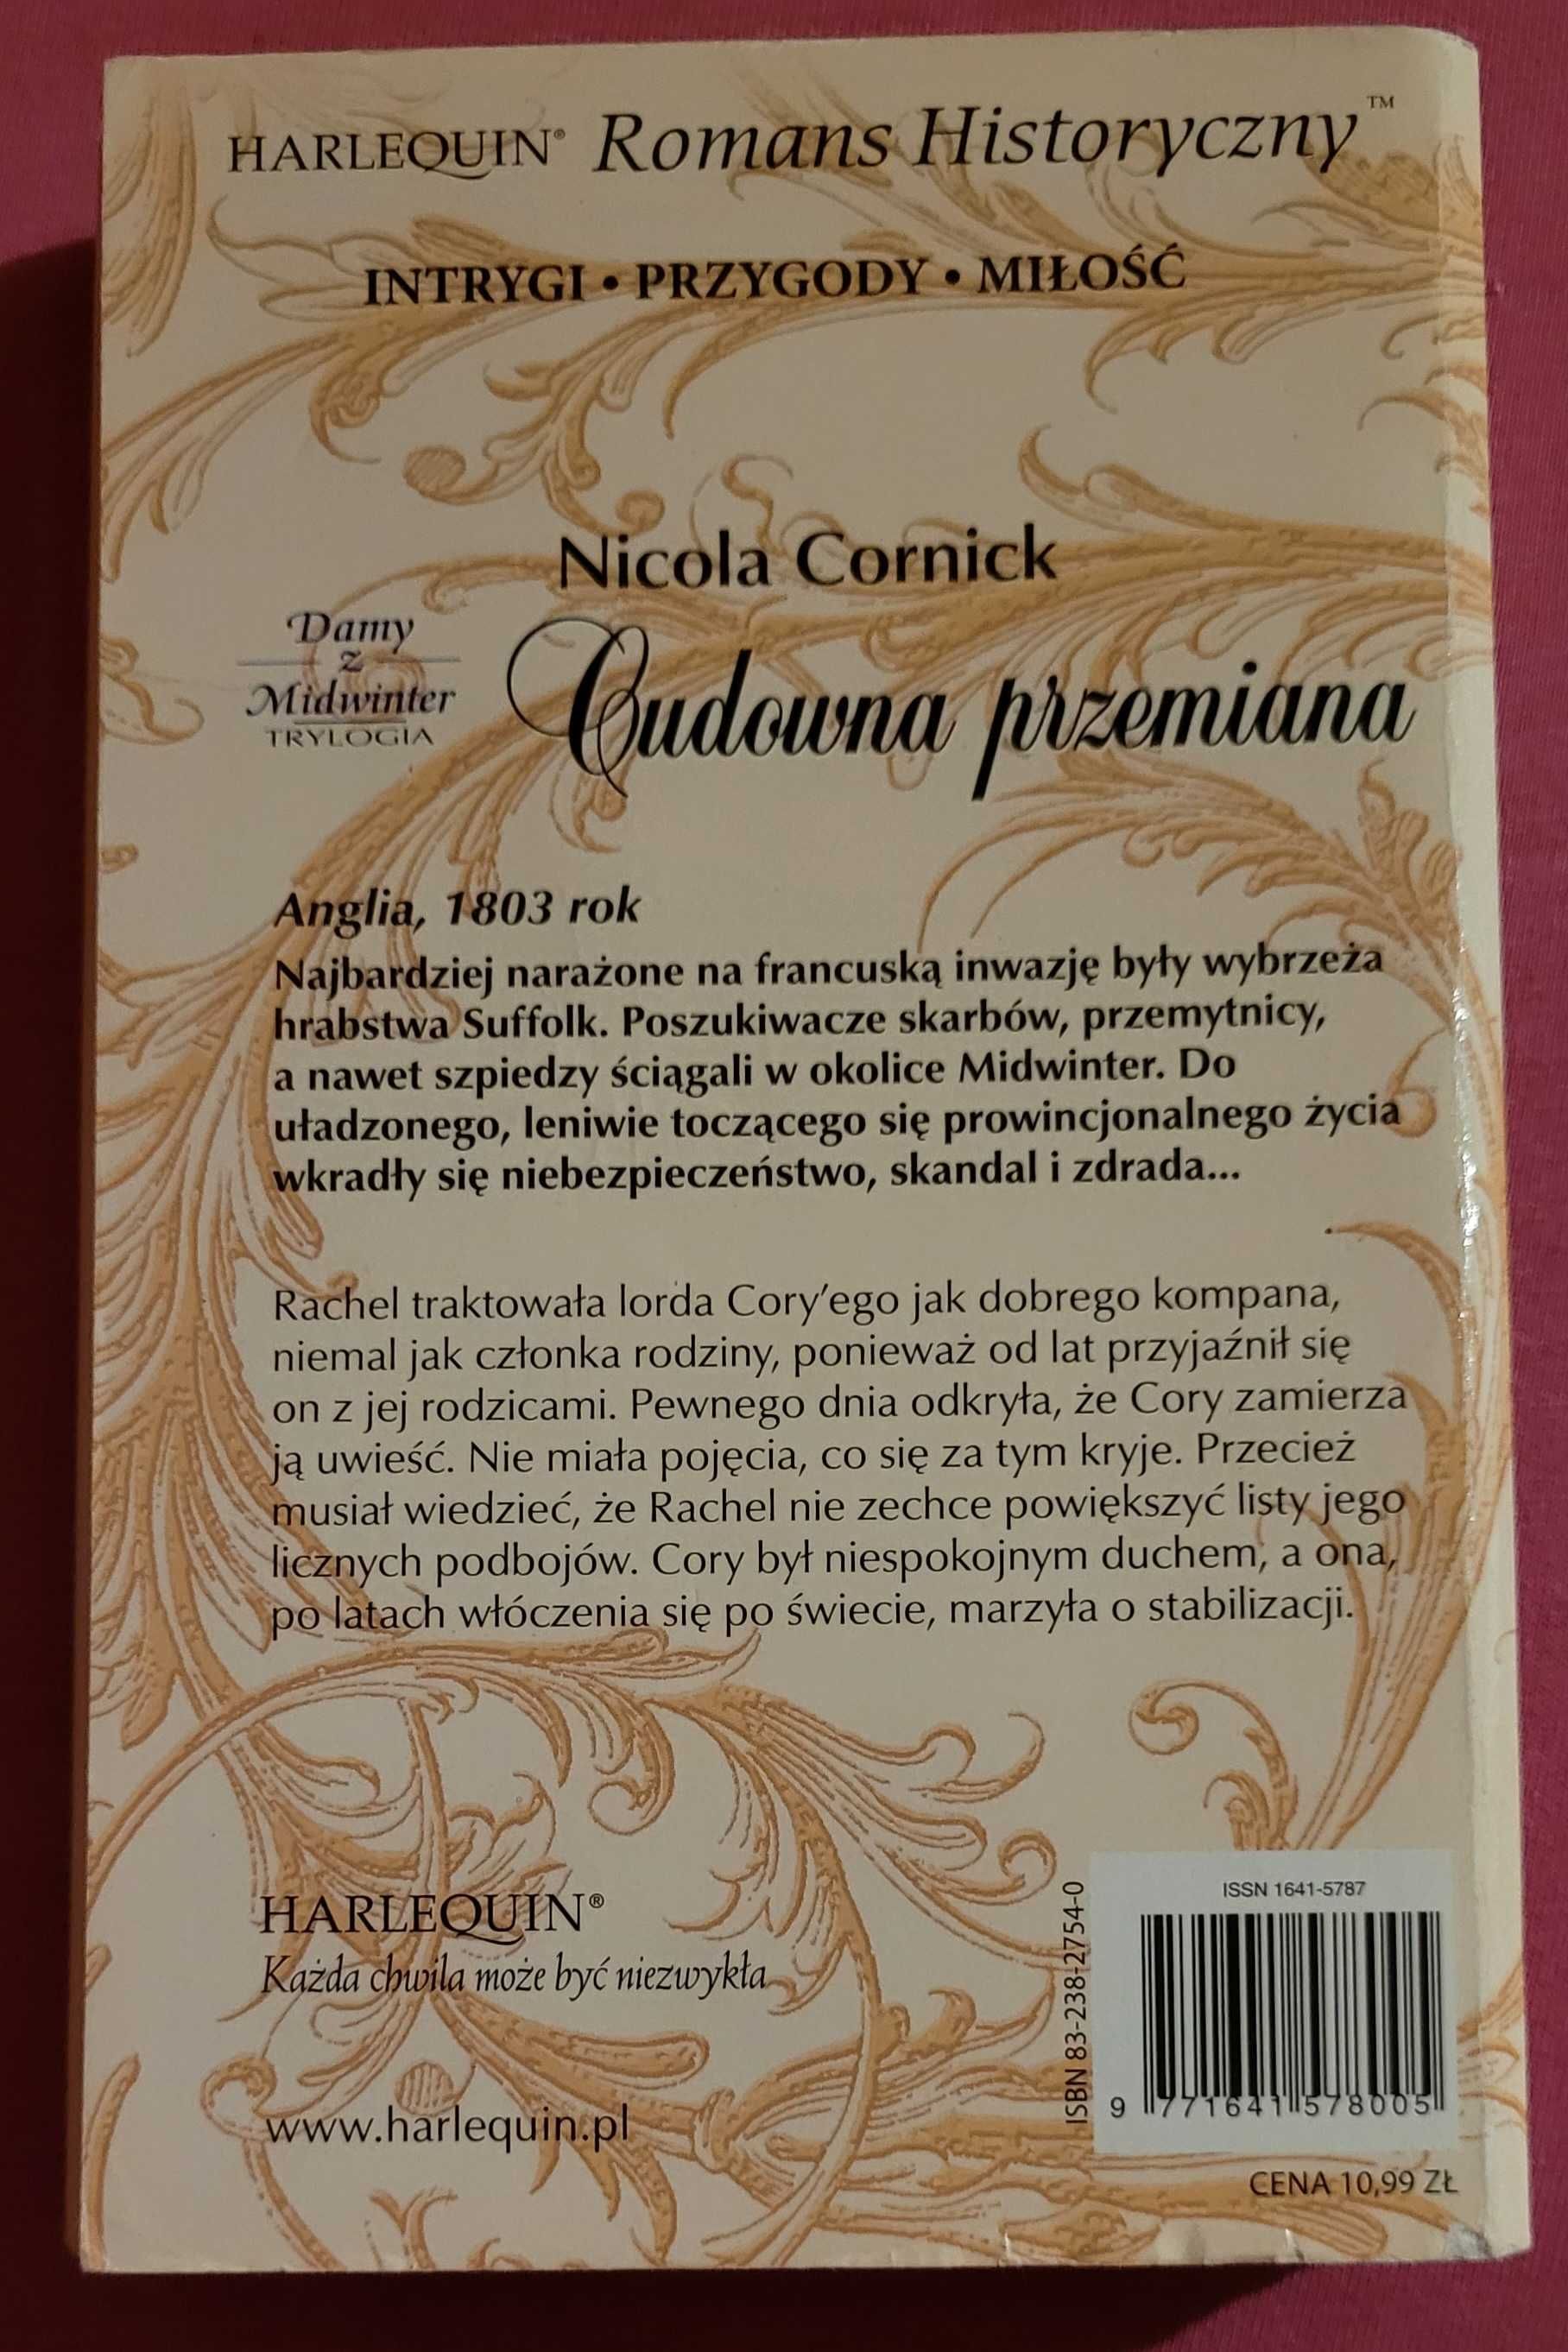 Romans historyczny "Cudowna przemiana " autor N.Cornick 159